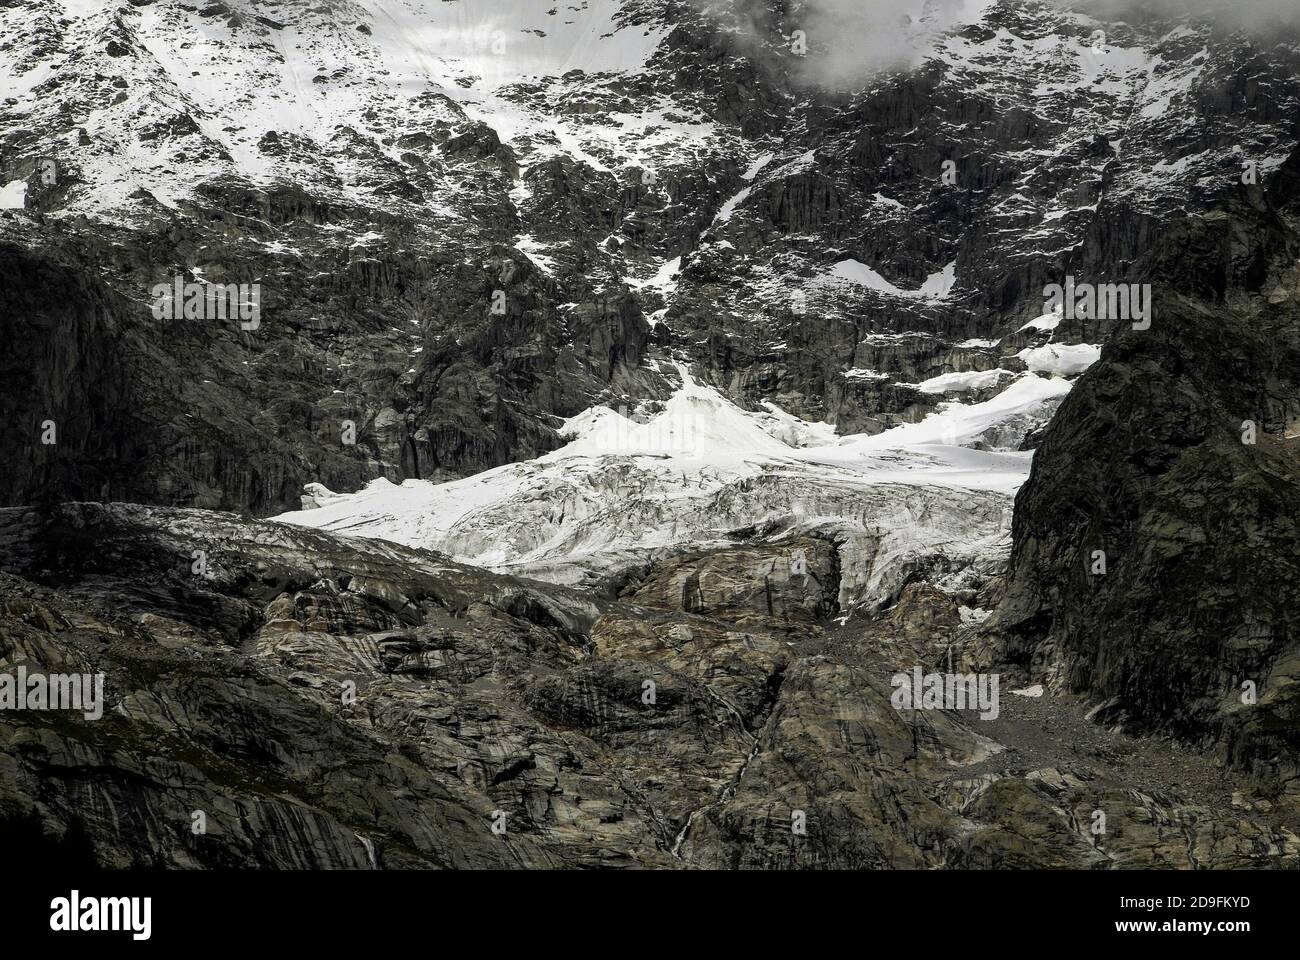 Im August, Monate vor dem Beginn des alpinen Winters, stürzt Schmelzwasser in den gestreift Felsen unter den Höhenschneefeldern und am Ende der Gletscher, die die zerklüfteten Hänge des Mont Blanc / Monte Bianco-Massivs hinunterschnappen, in Kanäle und Spalten. Aufnahme aus der Nähe von Entrèves, Courmayeur, Aostatal, Italien, in der Nähe des italienischen Eingangs zum 11.6 km (7.25 m) Mont-Blanc-Tunnel, der seit 1965 eine Alpenstraßenverbindung nach Frankreich bietet. Stockfoto